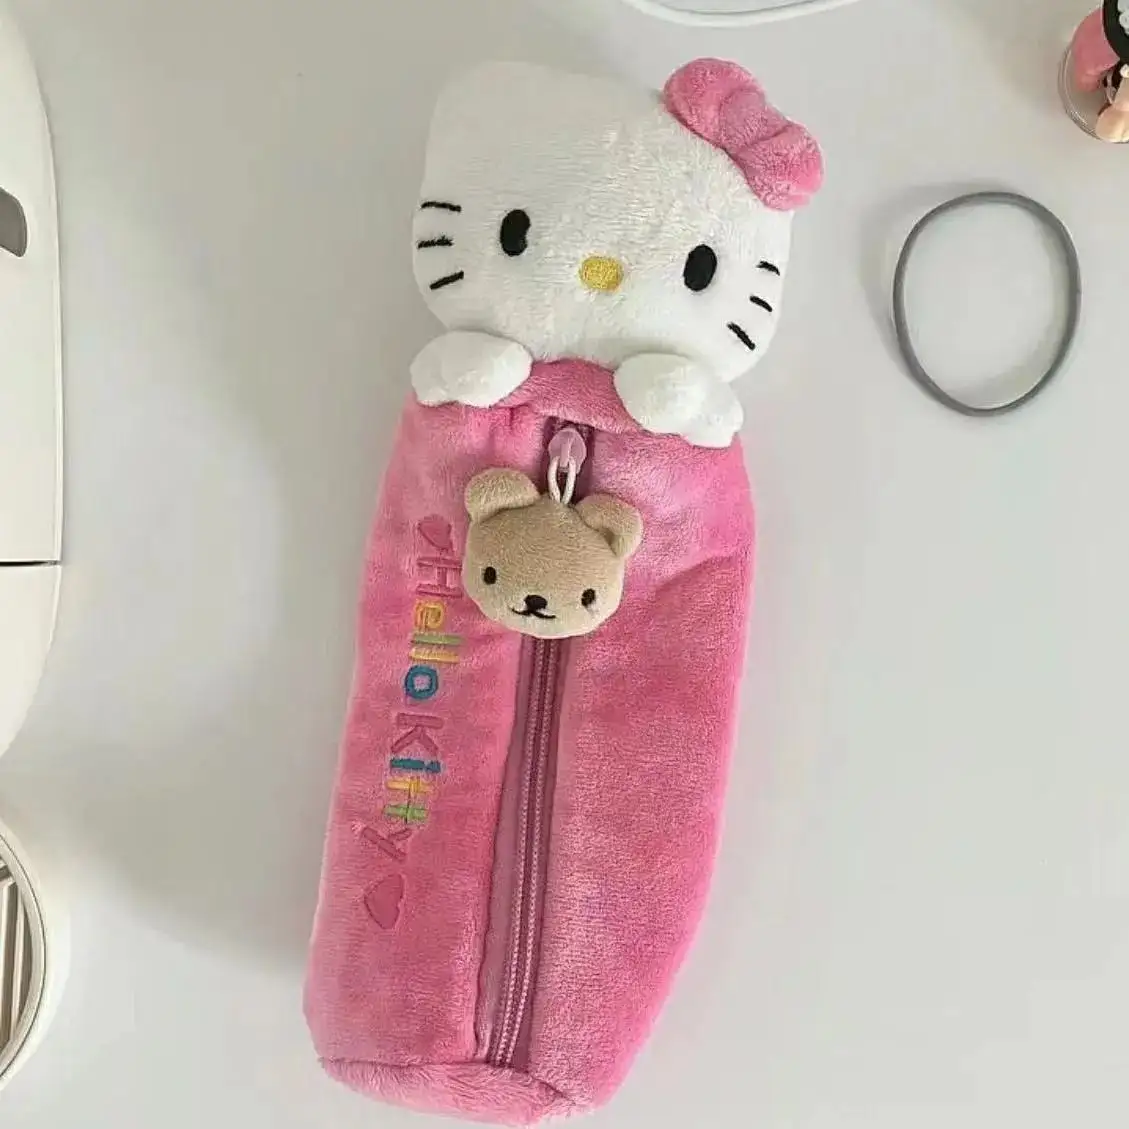 HL nueva cartera Sanrio Hello KT dibujos animados Kuromi lindo estudiante chica cumpleaños fiesta regalo gatito felpa lápiz caso bolsa papelería